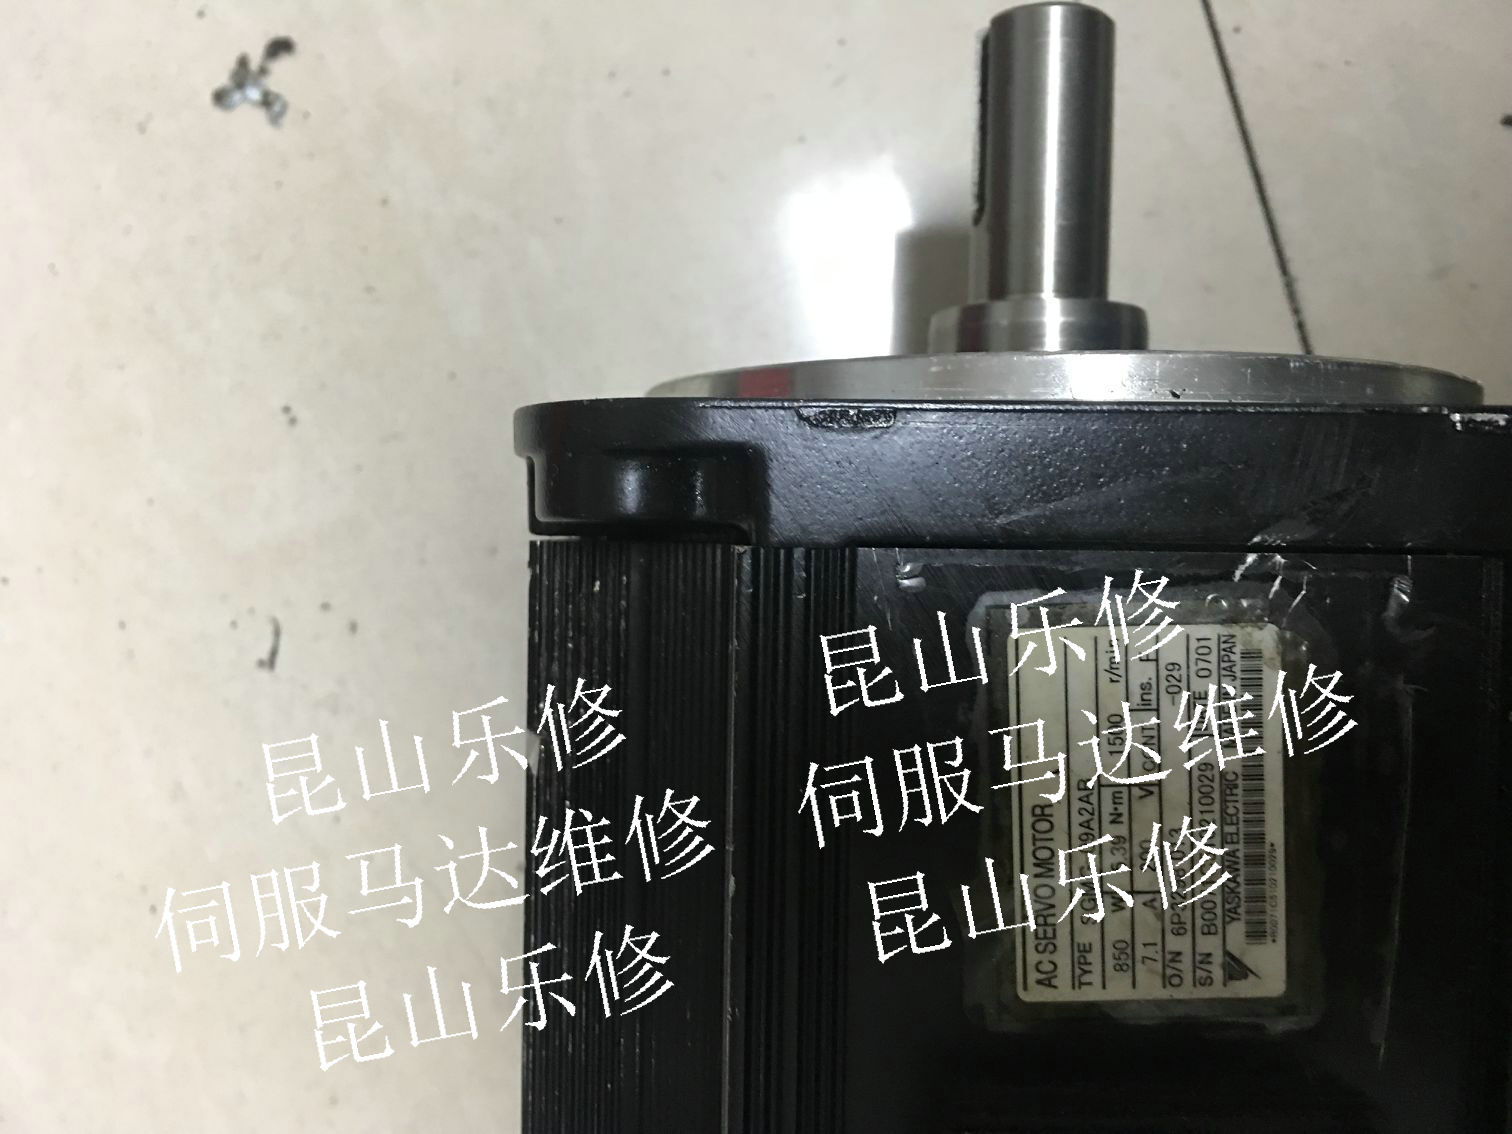 上海松江三洋伺服电机维修P60B22550BCS24维修编码器维修刹车调试